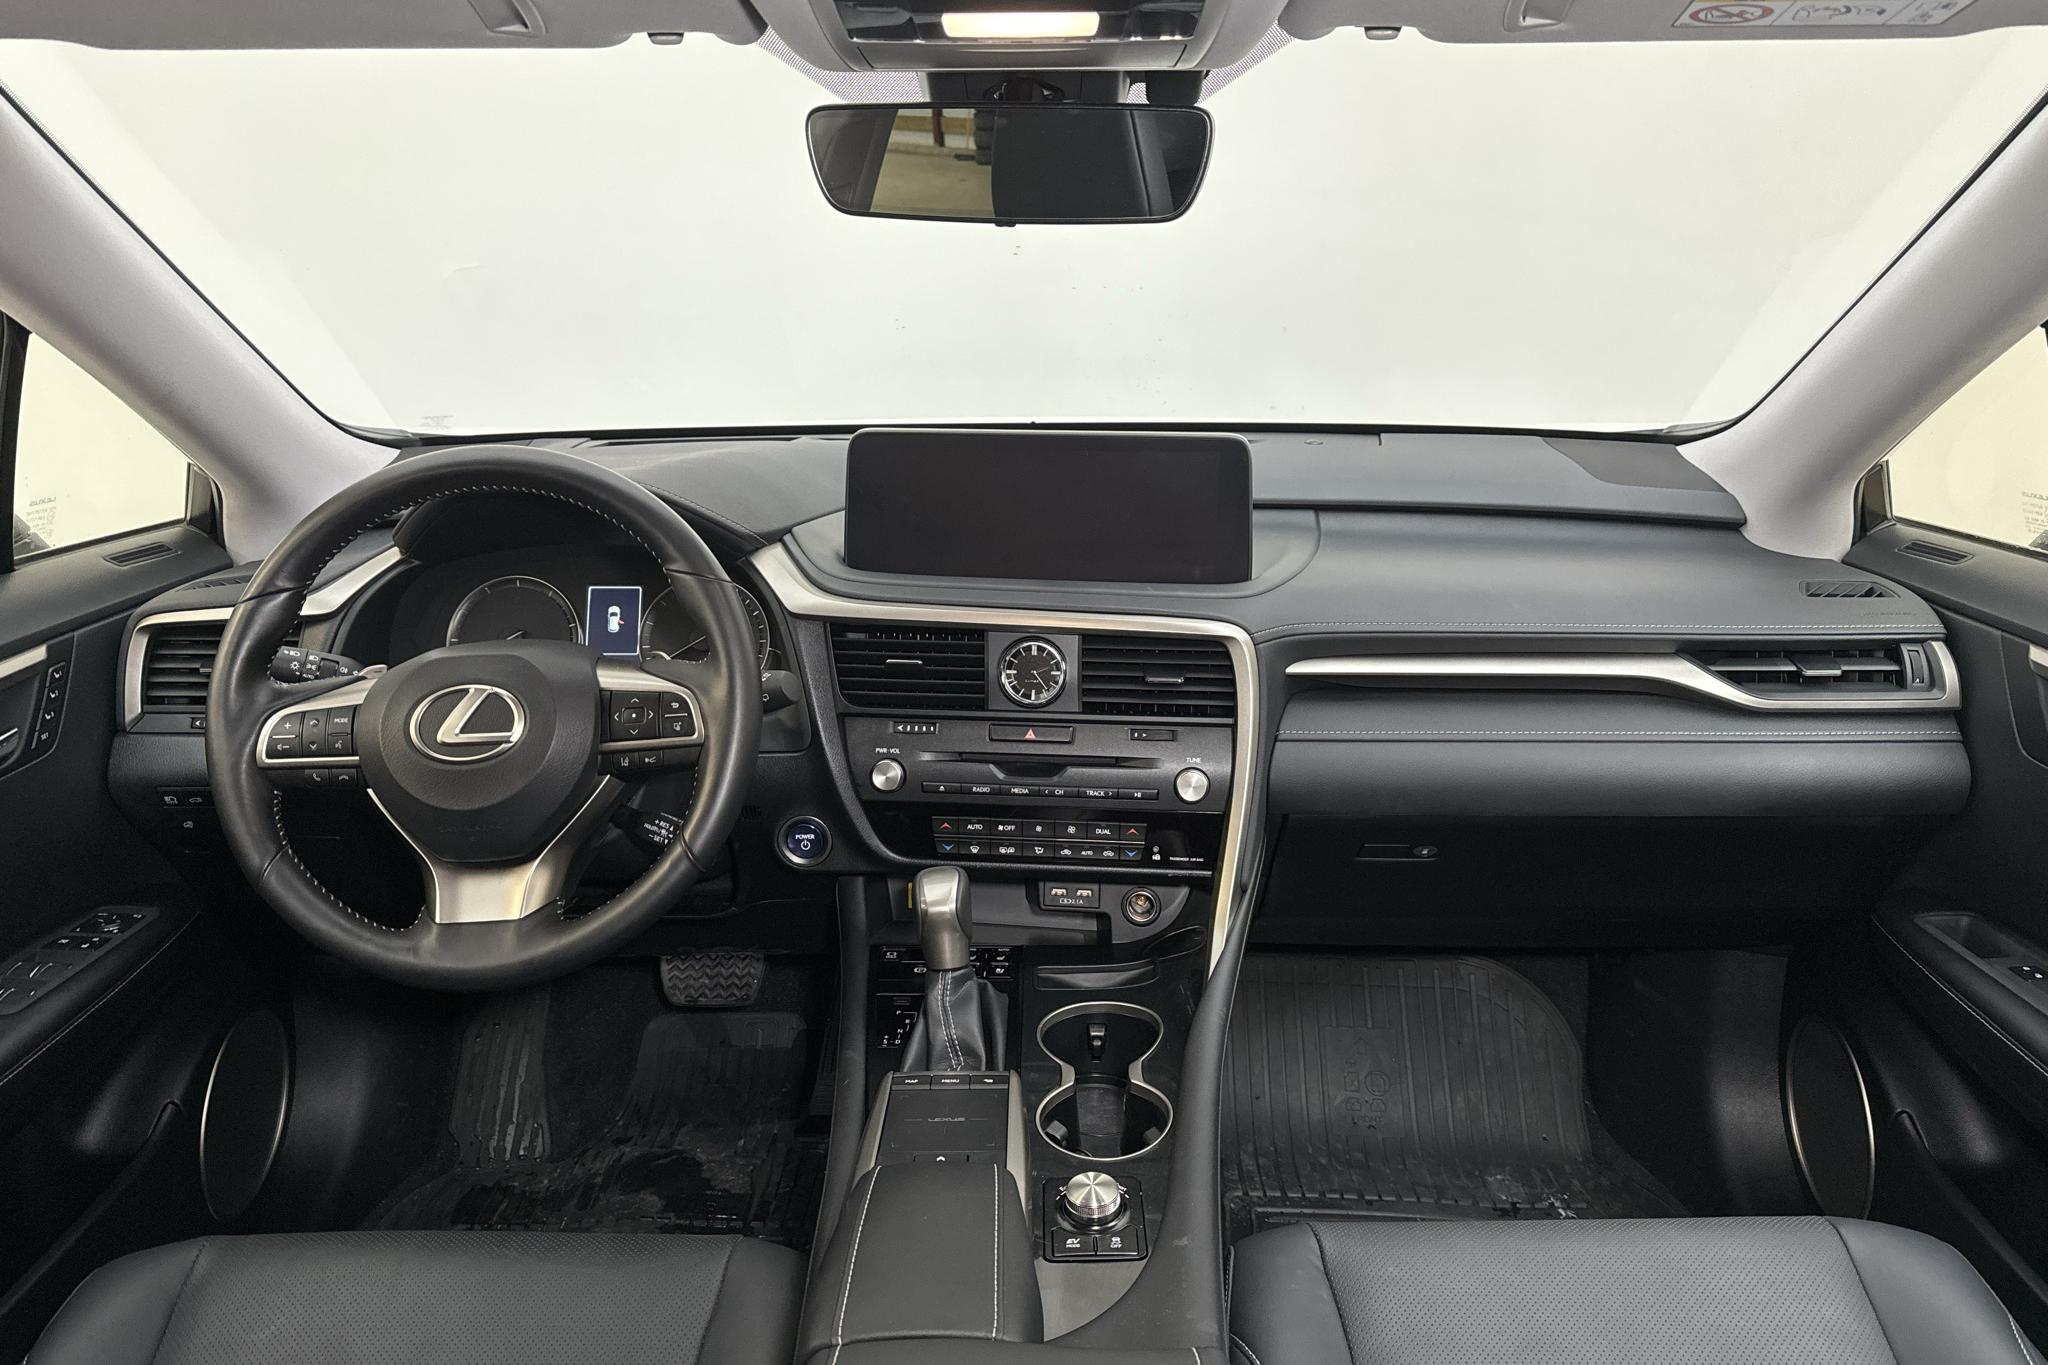 Lexus RX 450h AWD (313hk) - 11 300 km - Automatic - white - 2021